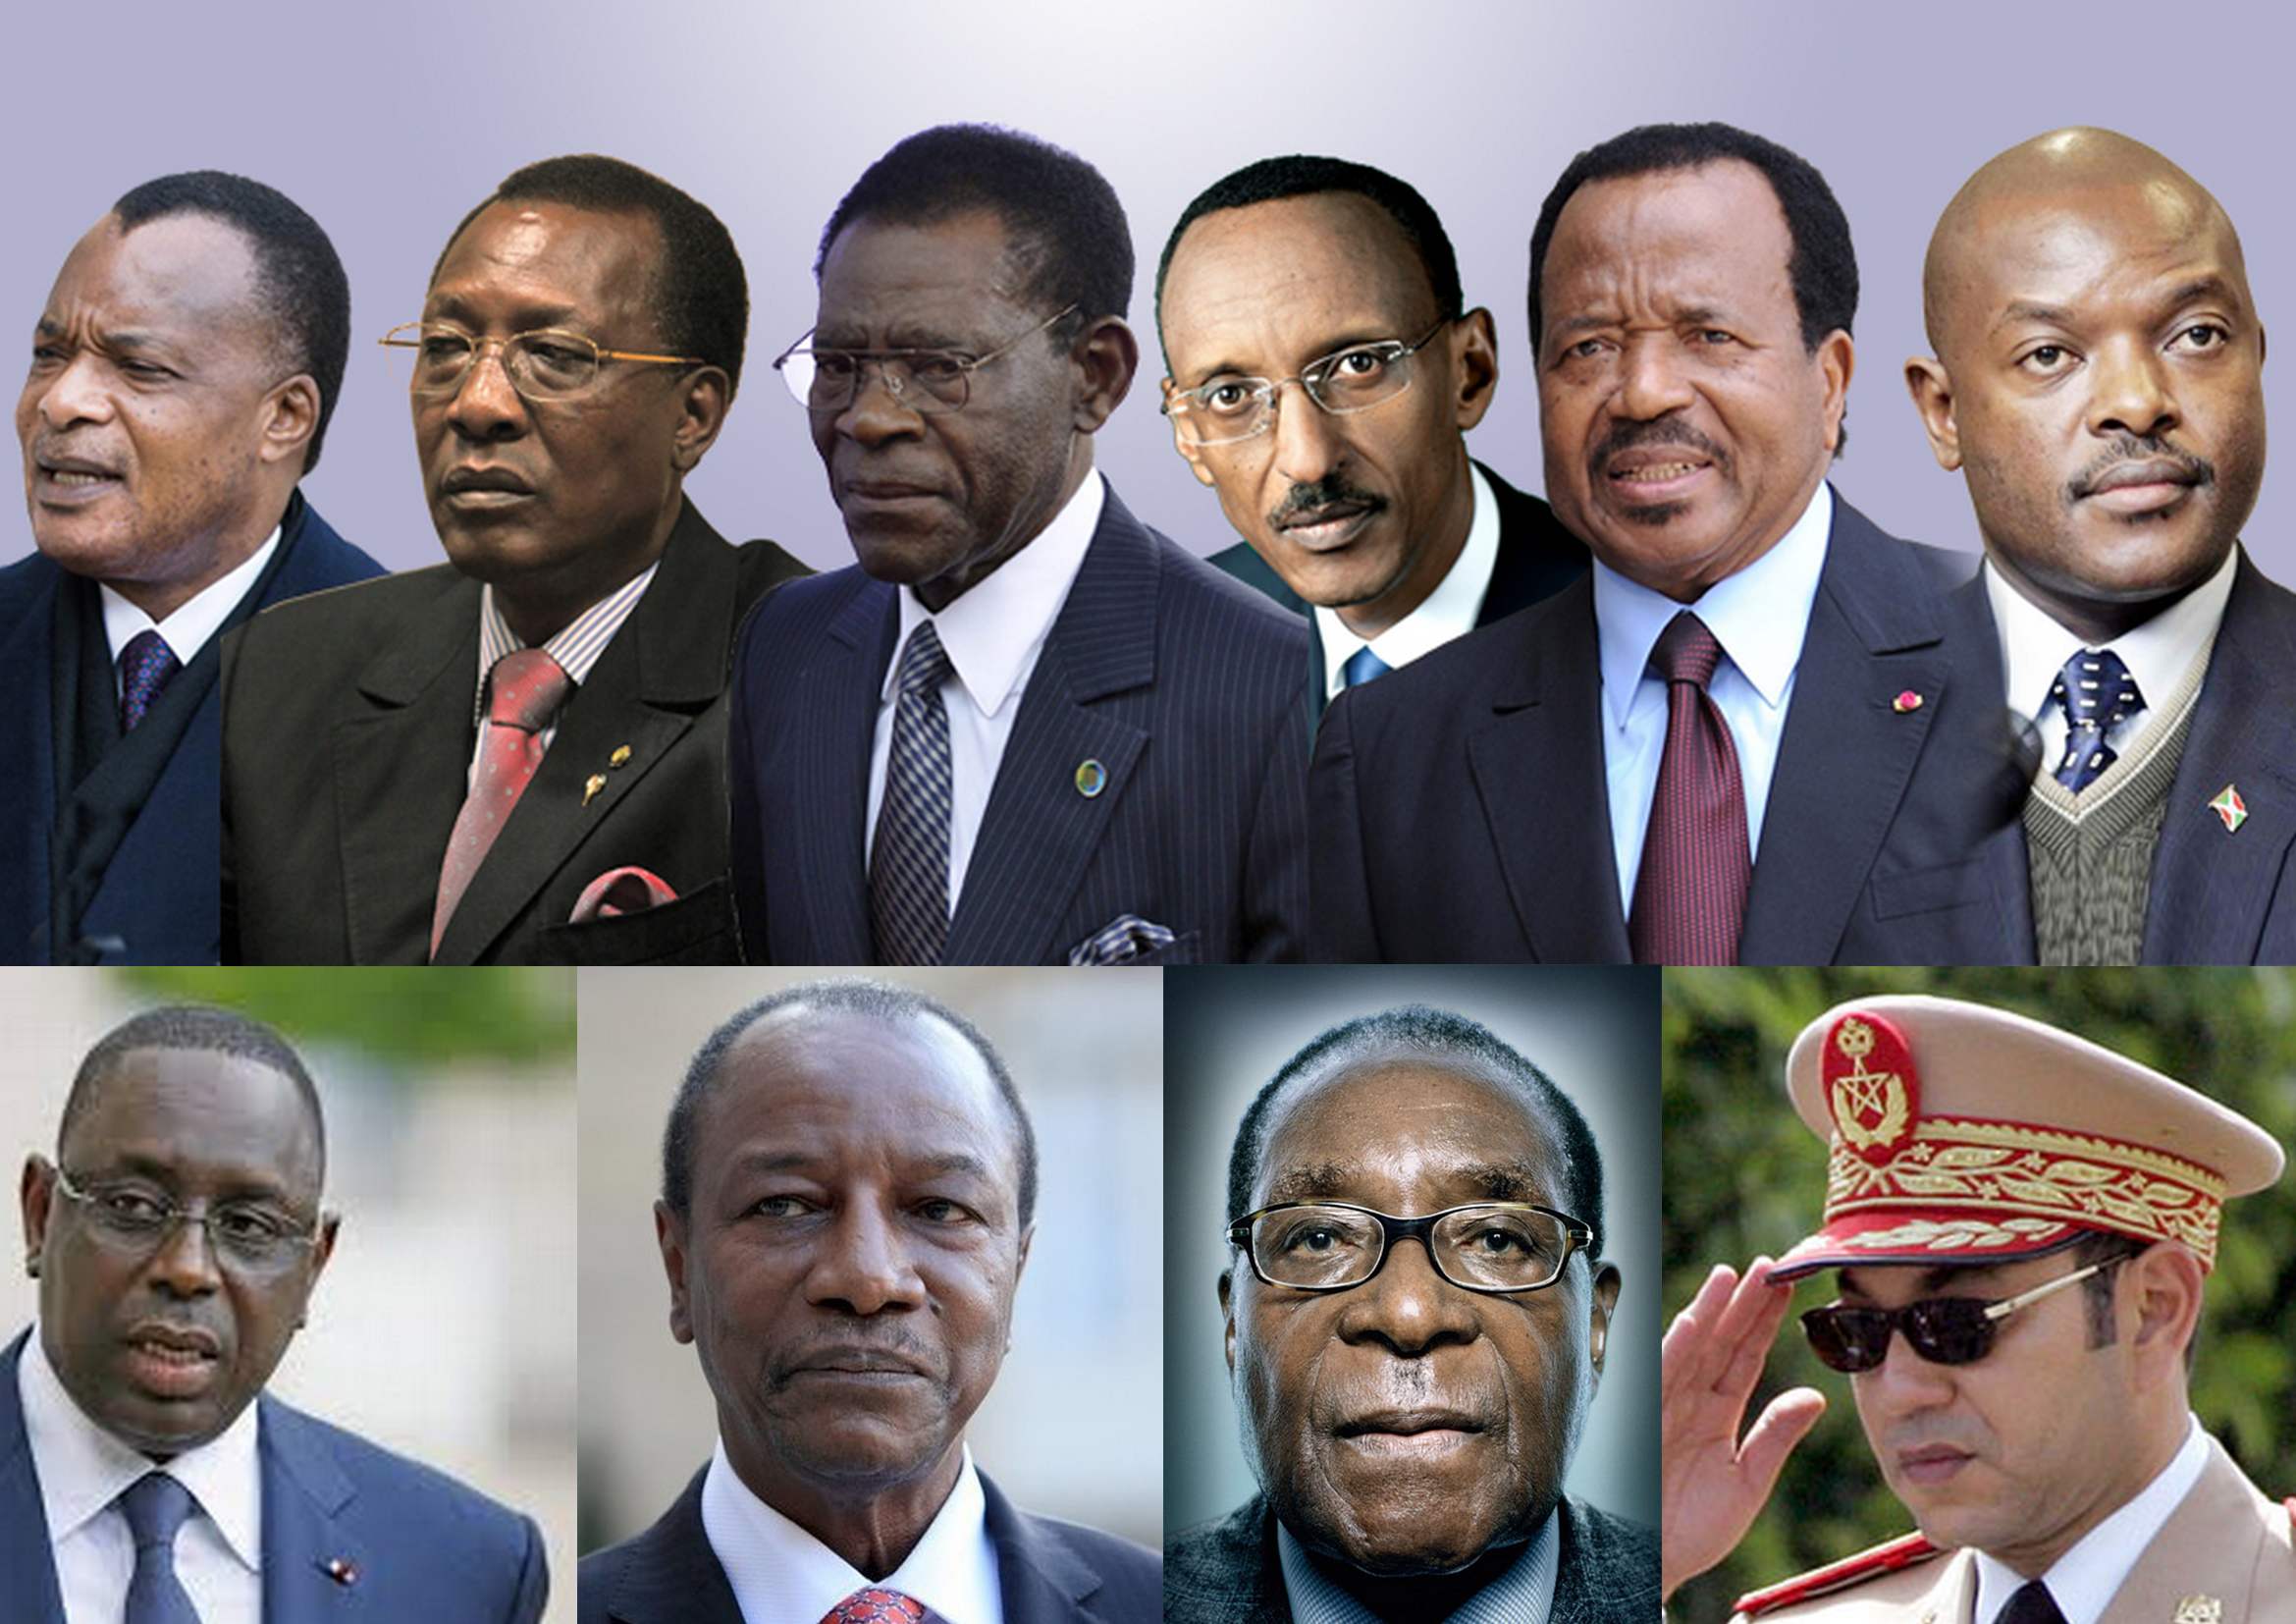 Franc-maçonnerie : Ces présidents africains initiés à des loges. Pourquoi Macky Sall n'en fait pas partie?